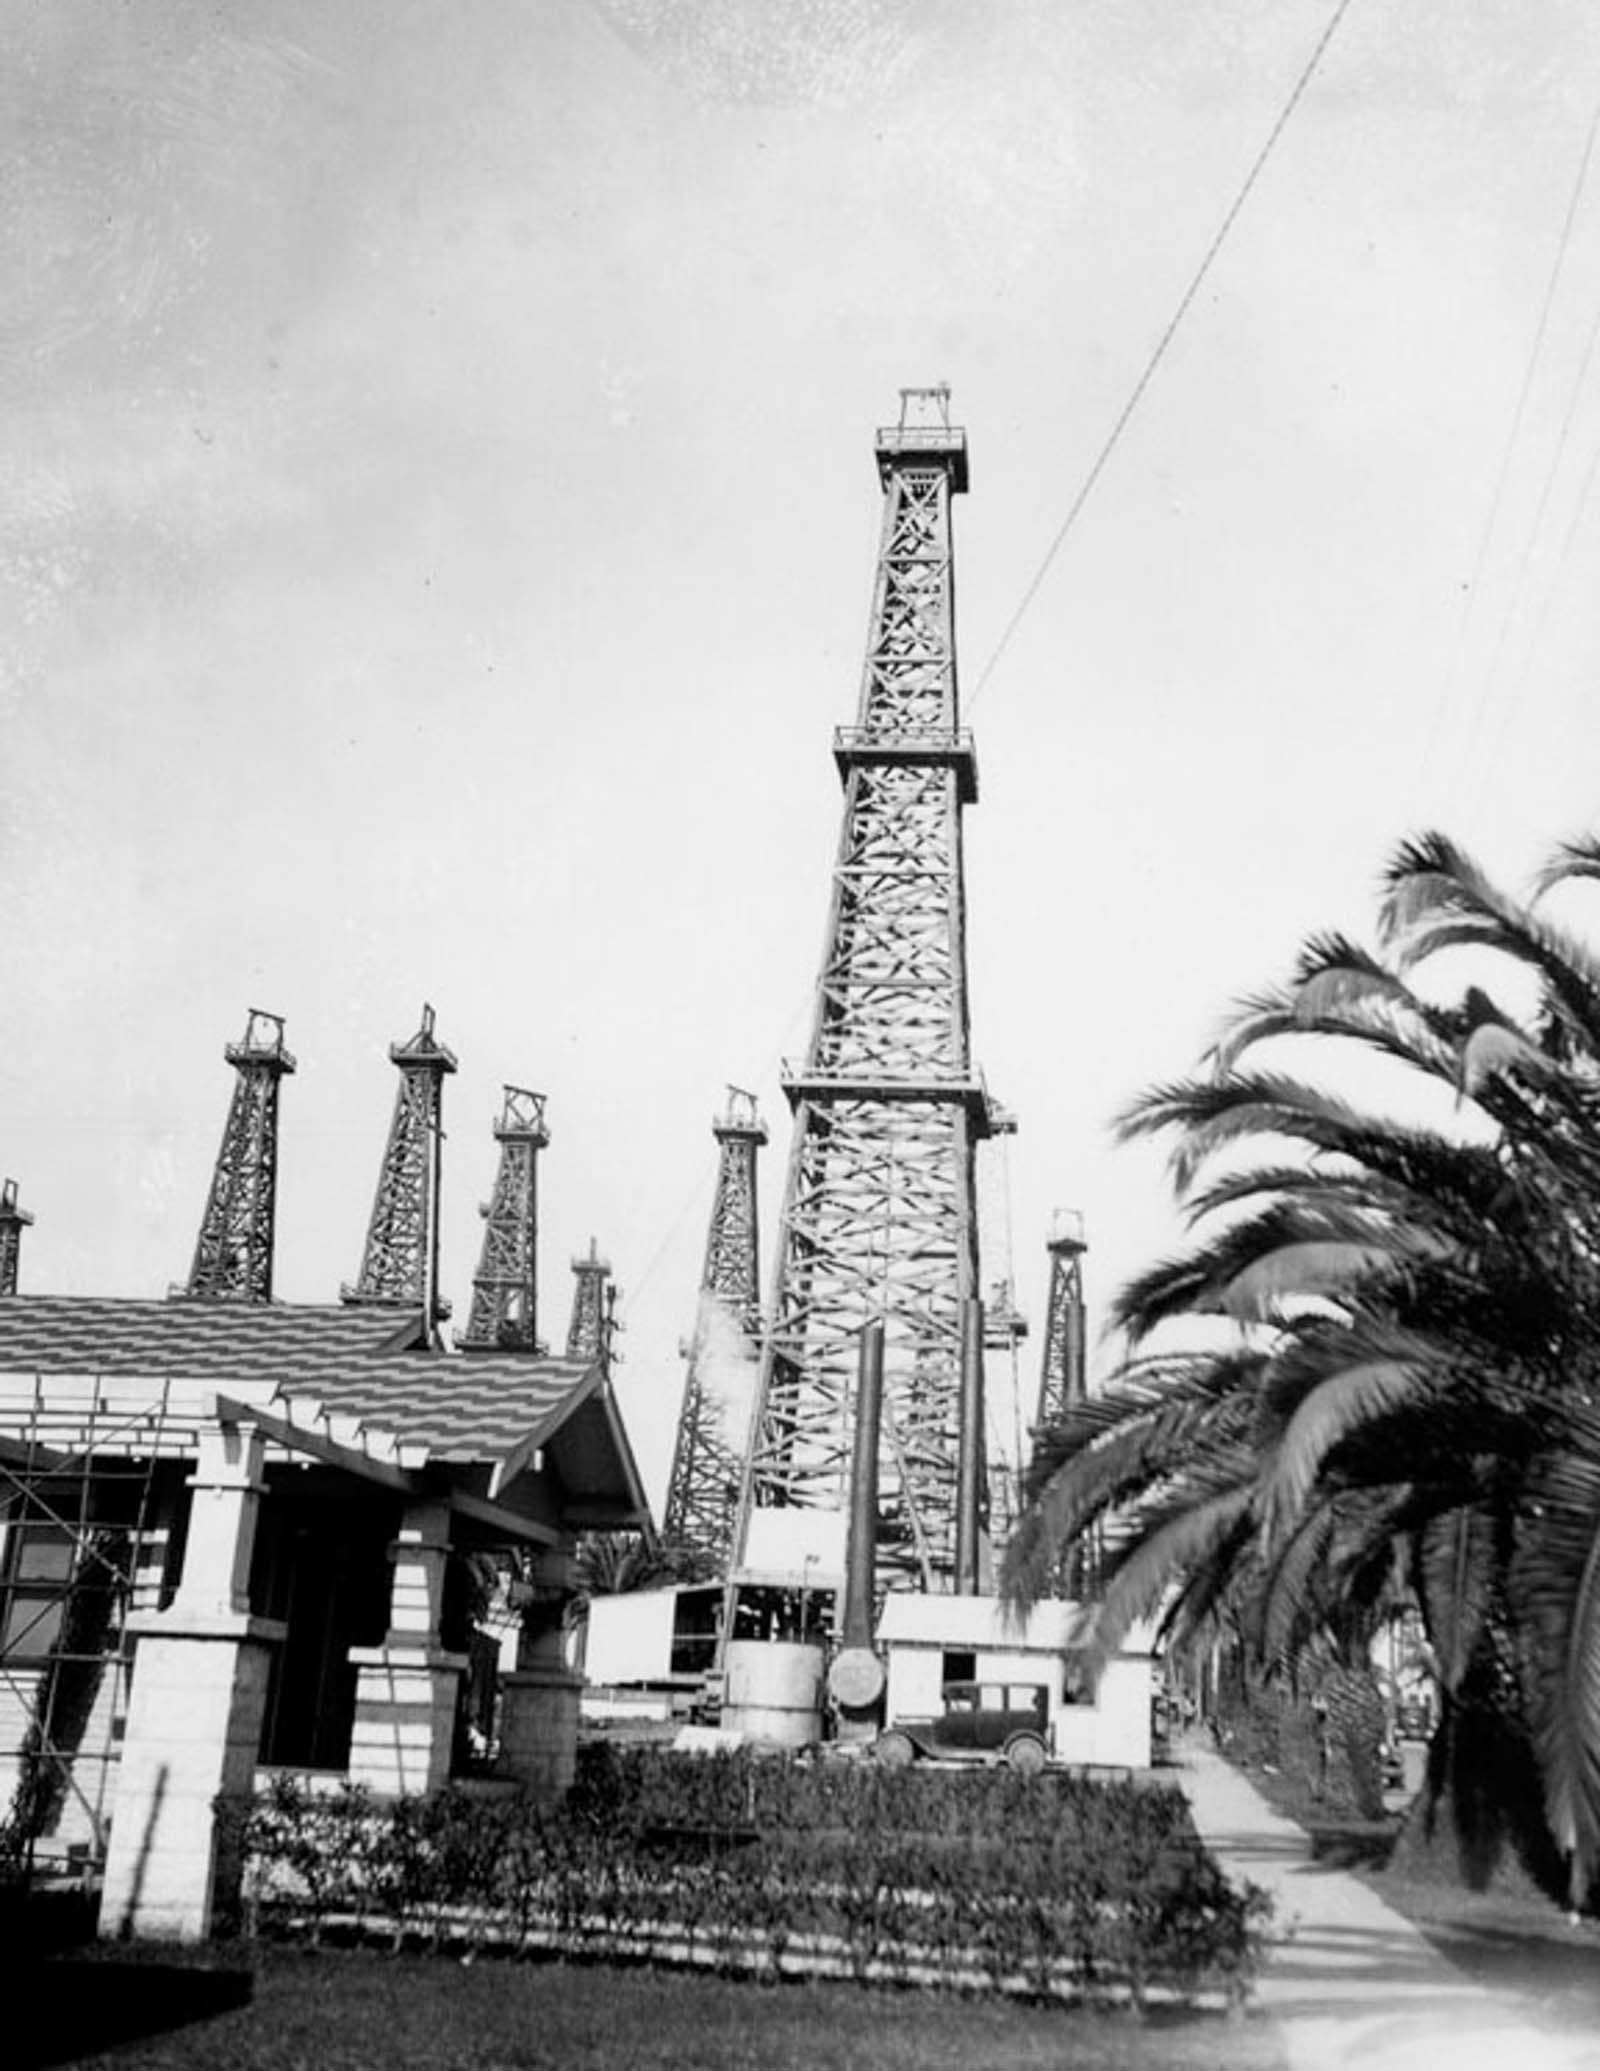 A Long Beach home with oil derricks nearby, 1929.